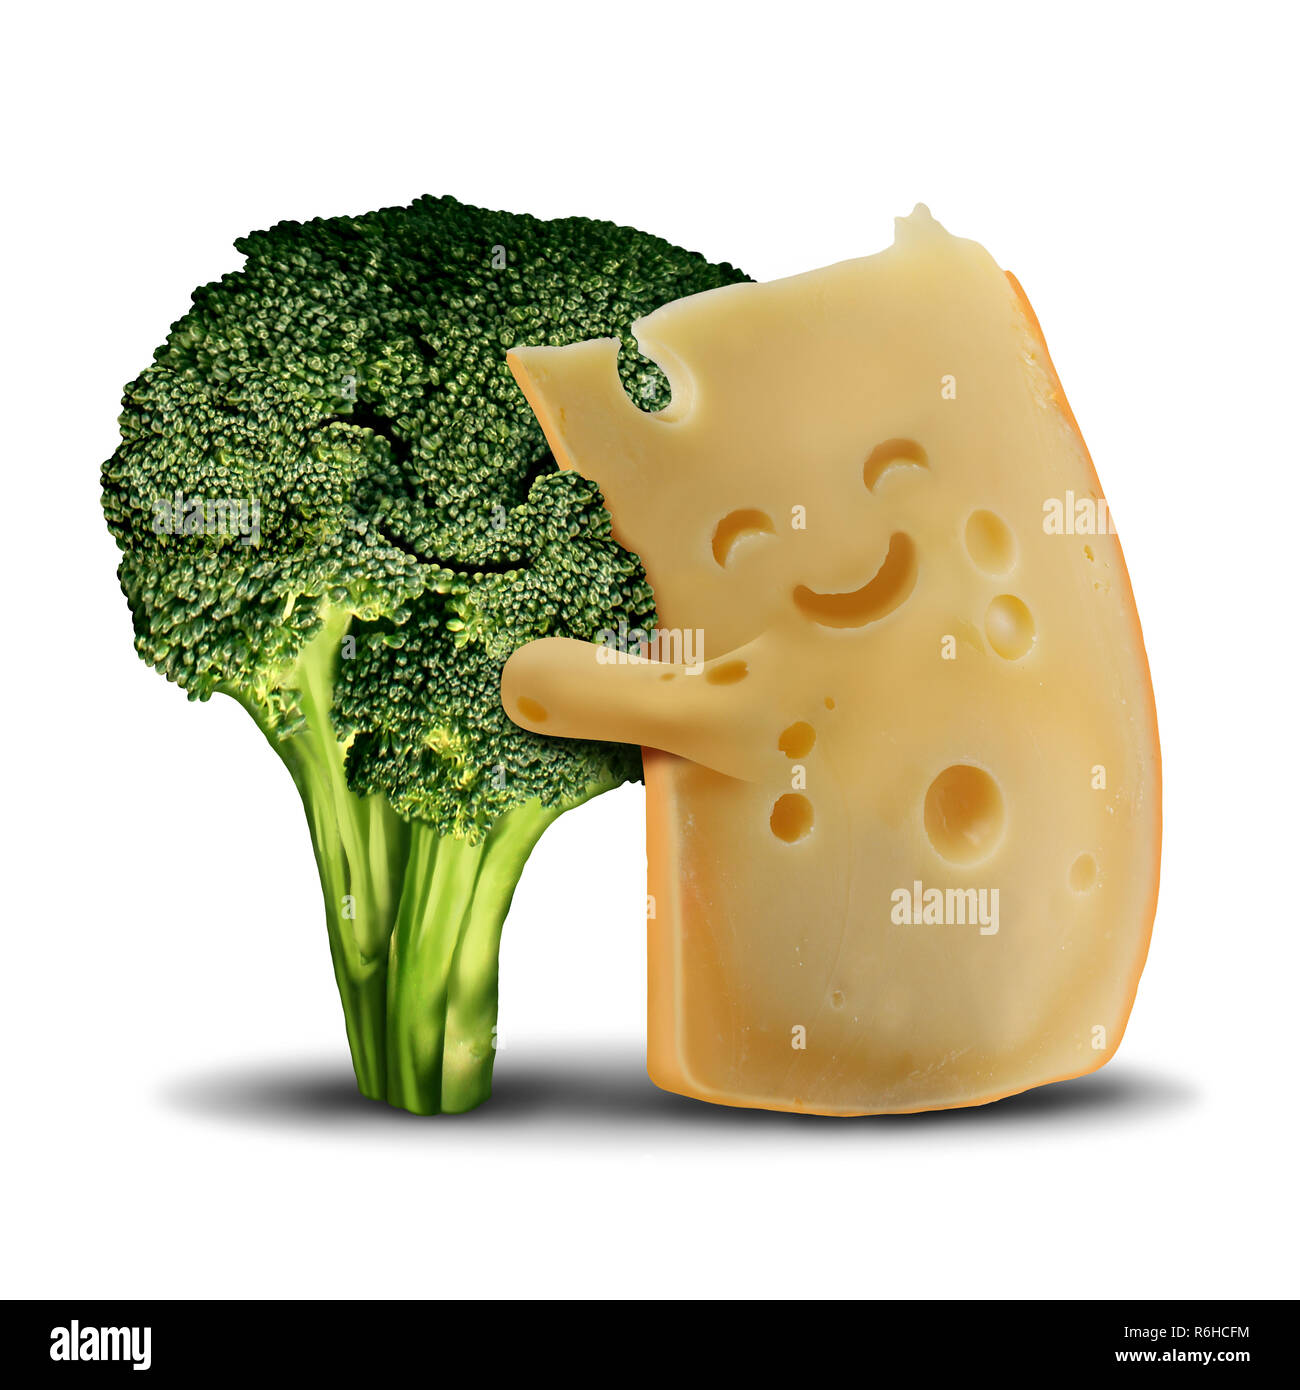 Lustig, Brokkoli und Spaß Käse Lebensmittel Konzept so süß lächelnd Happy snack Zutaten und mit einem gesunden grünen Gemüse Charakter. Stockfoto